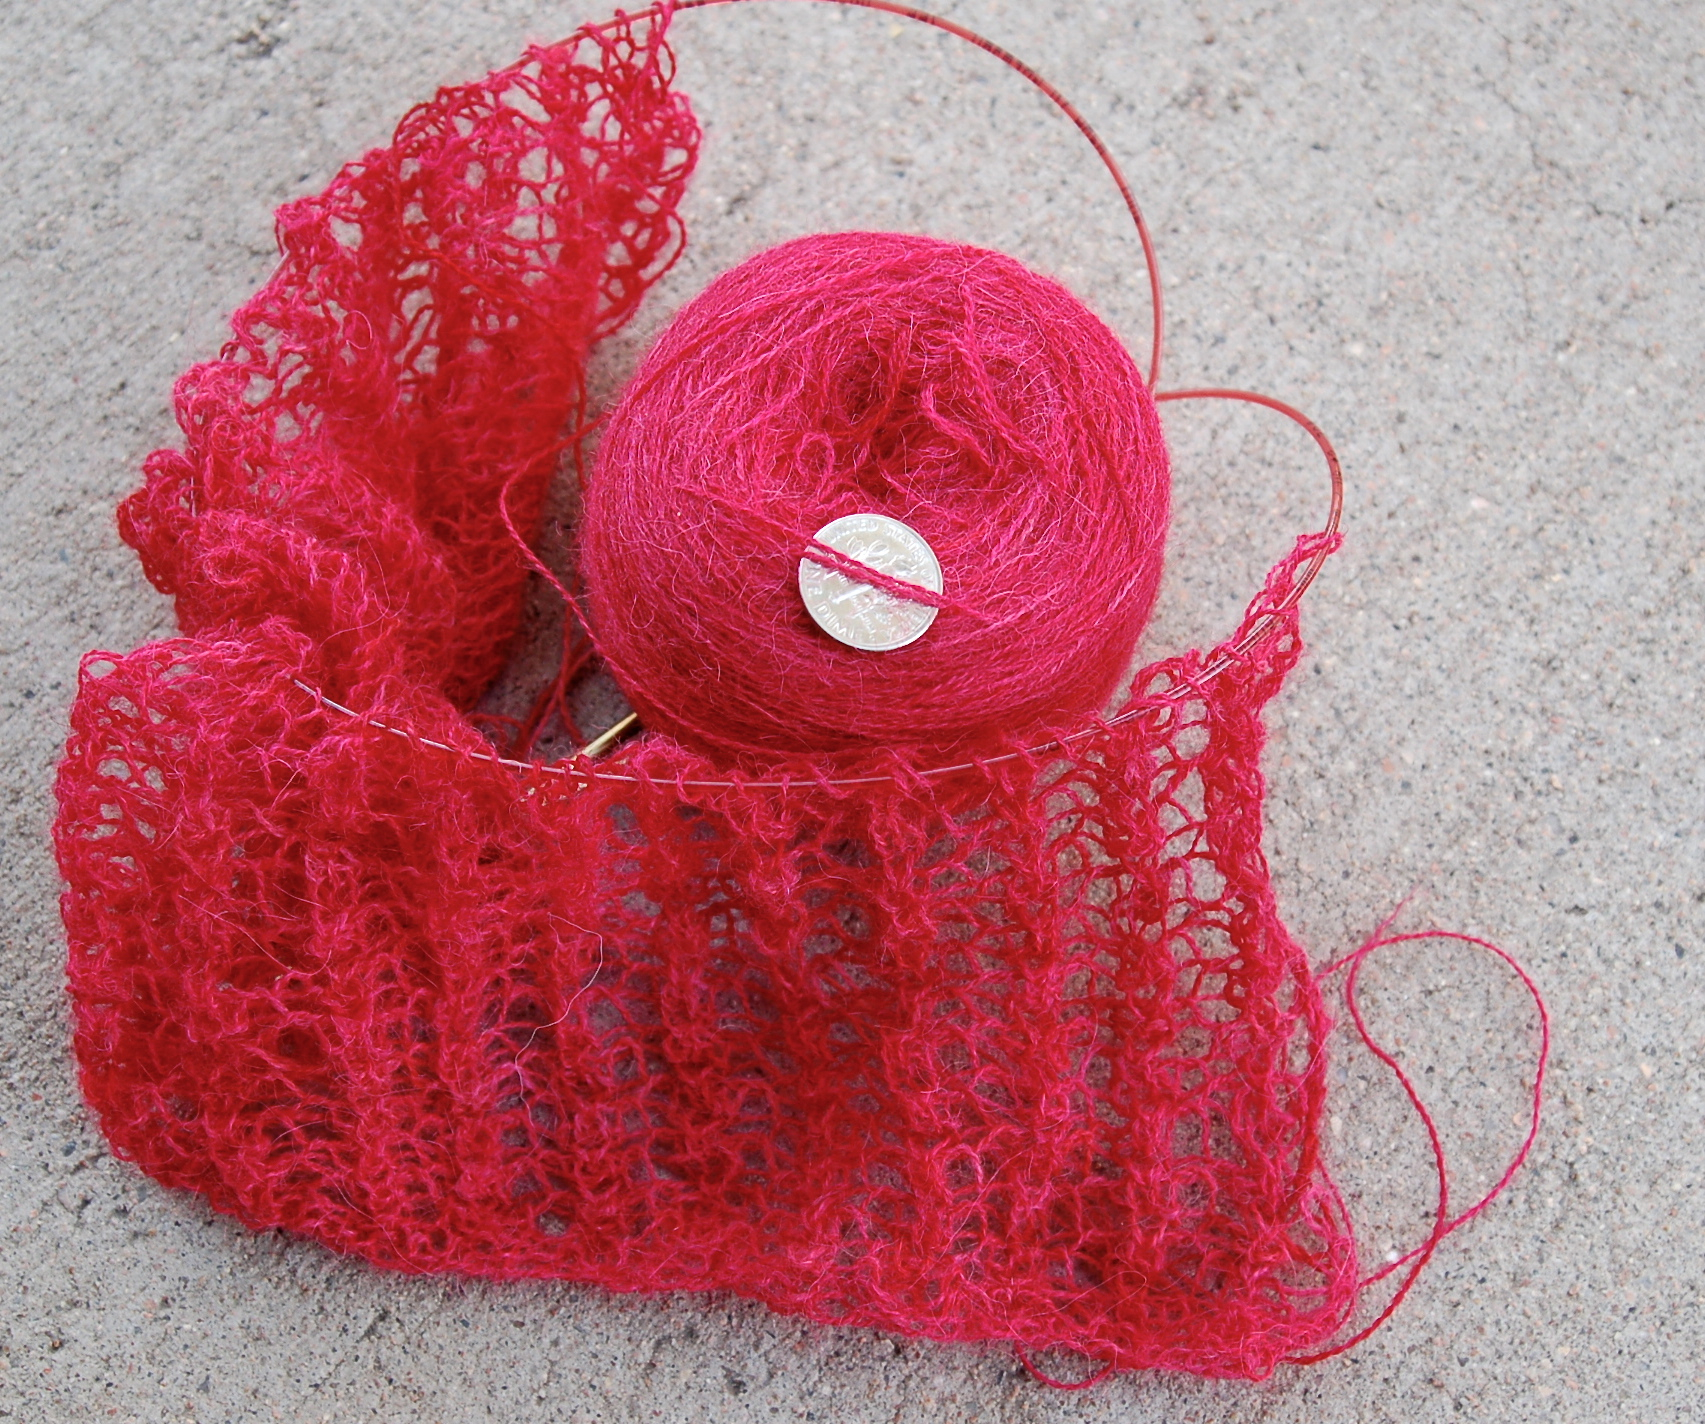 Gossamer Hand-dyed lace knitting yarn